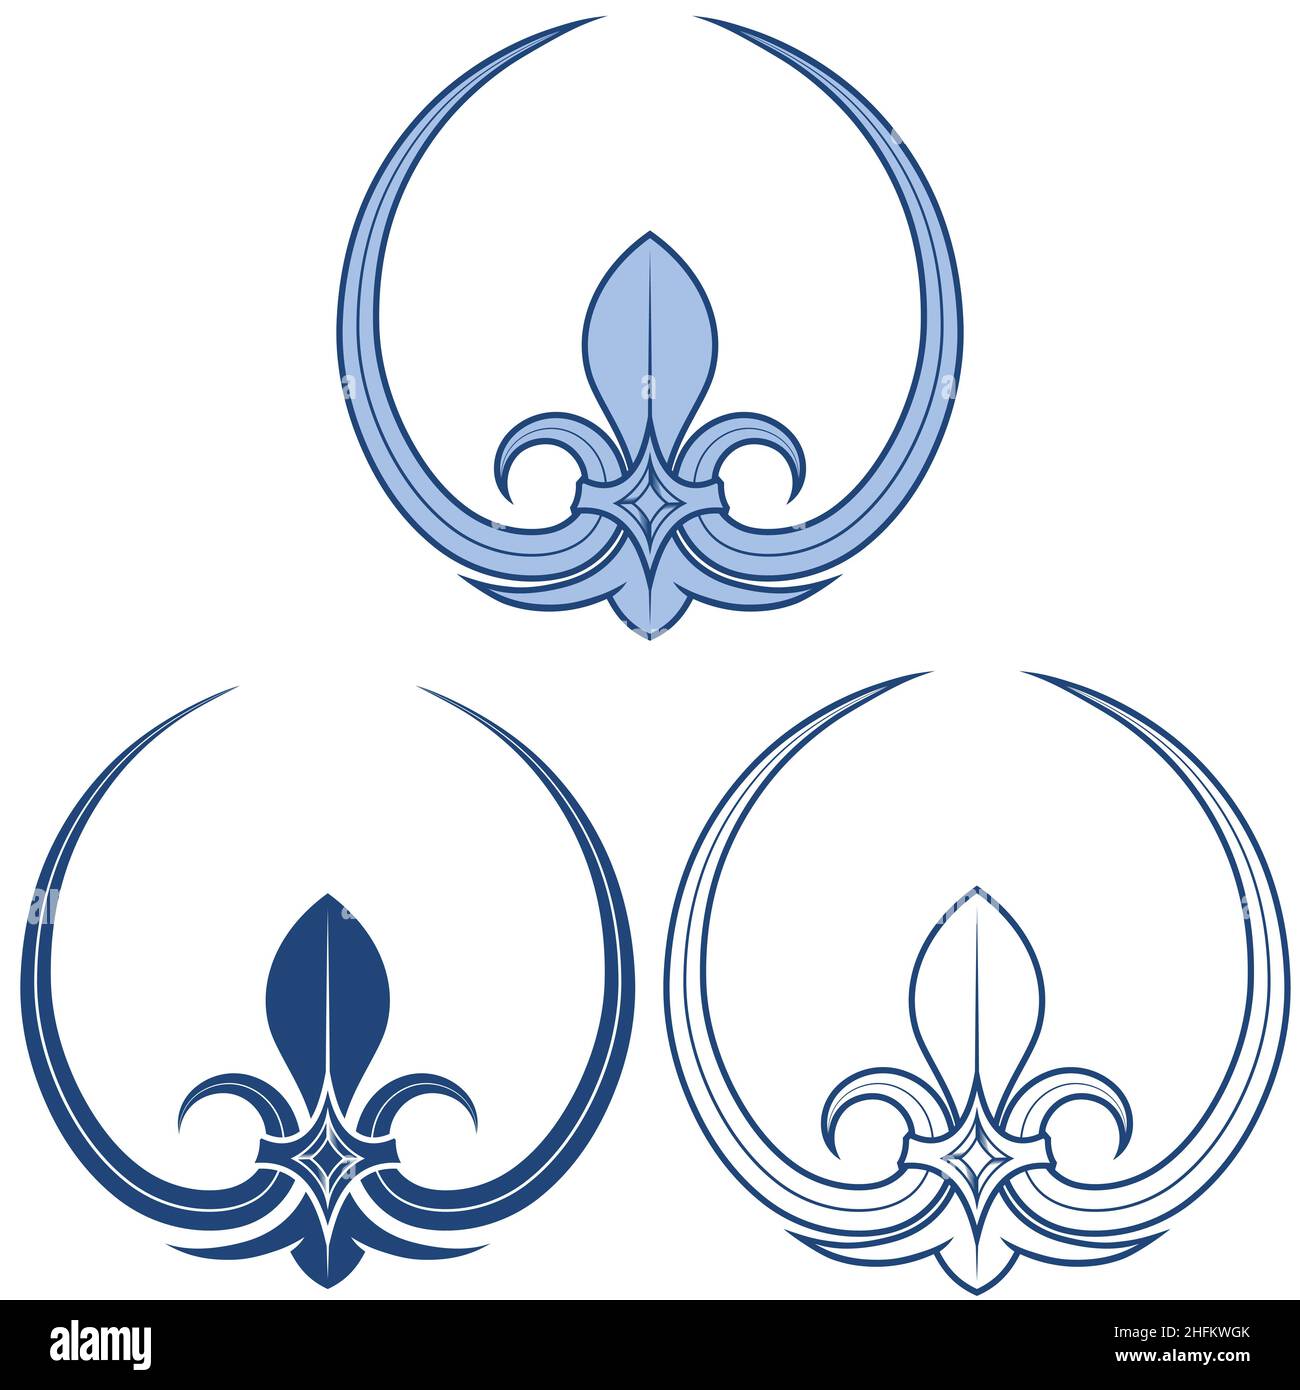 Fleur lis disegno vettoriale, rappresentazione del fleur de lis, simbolo utilizzato in eraldica medievale Illustrazione Vettoriale